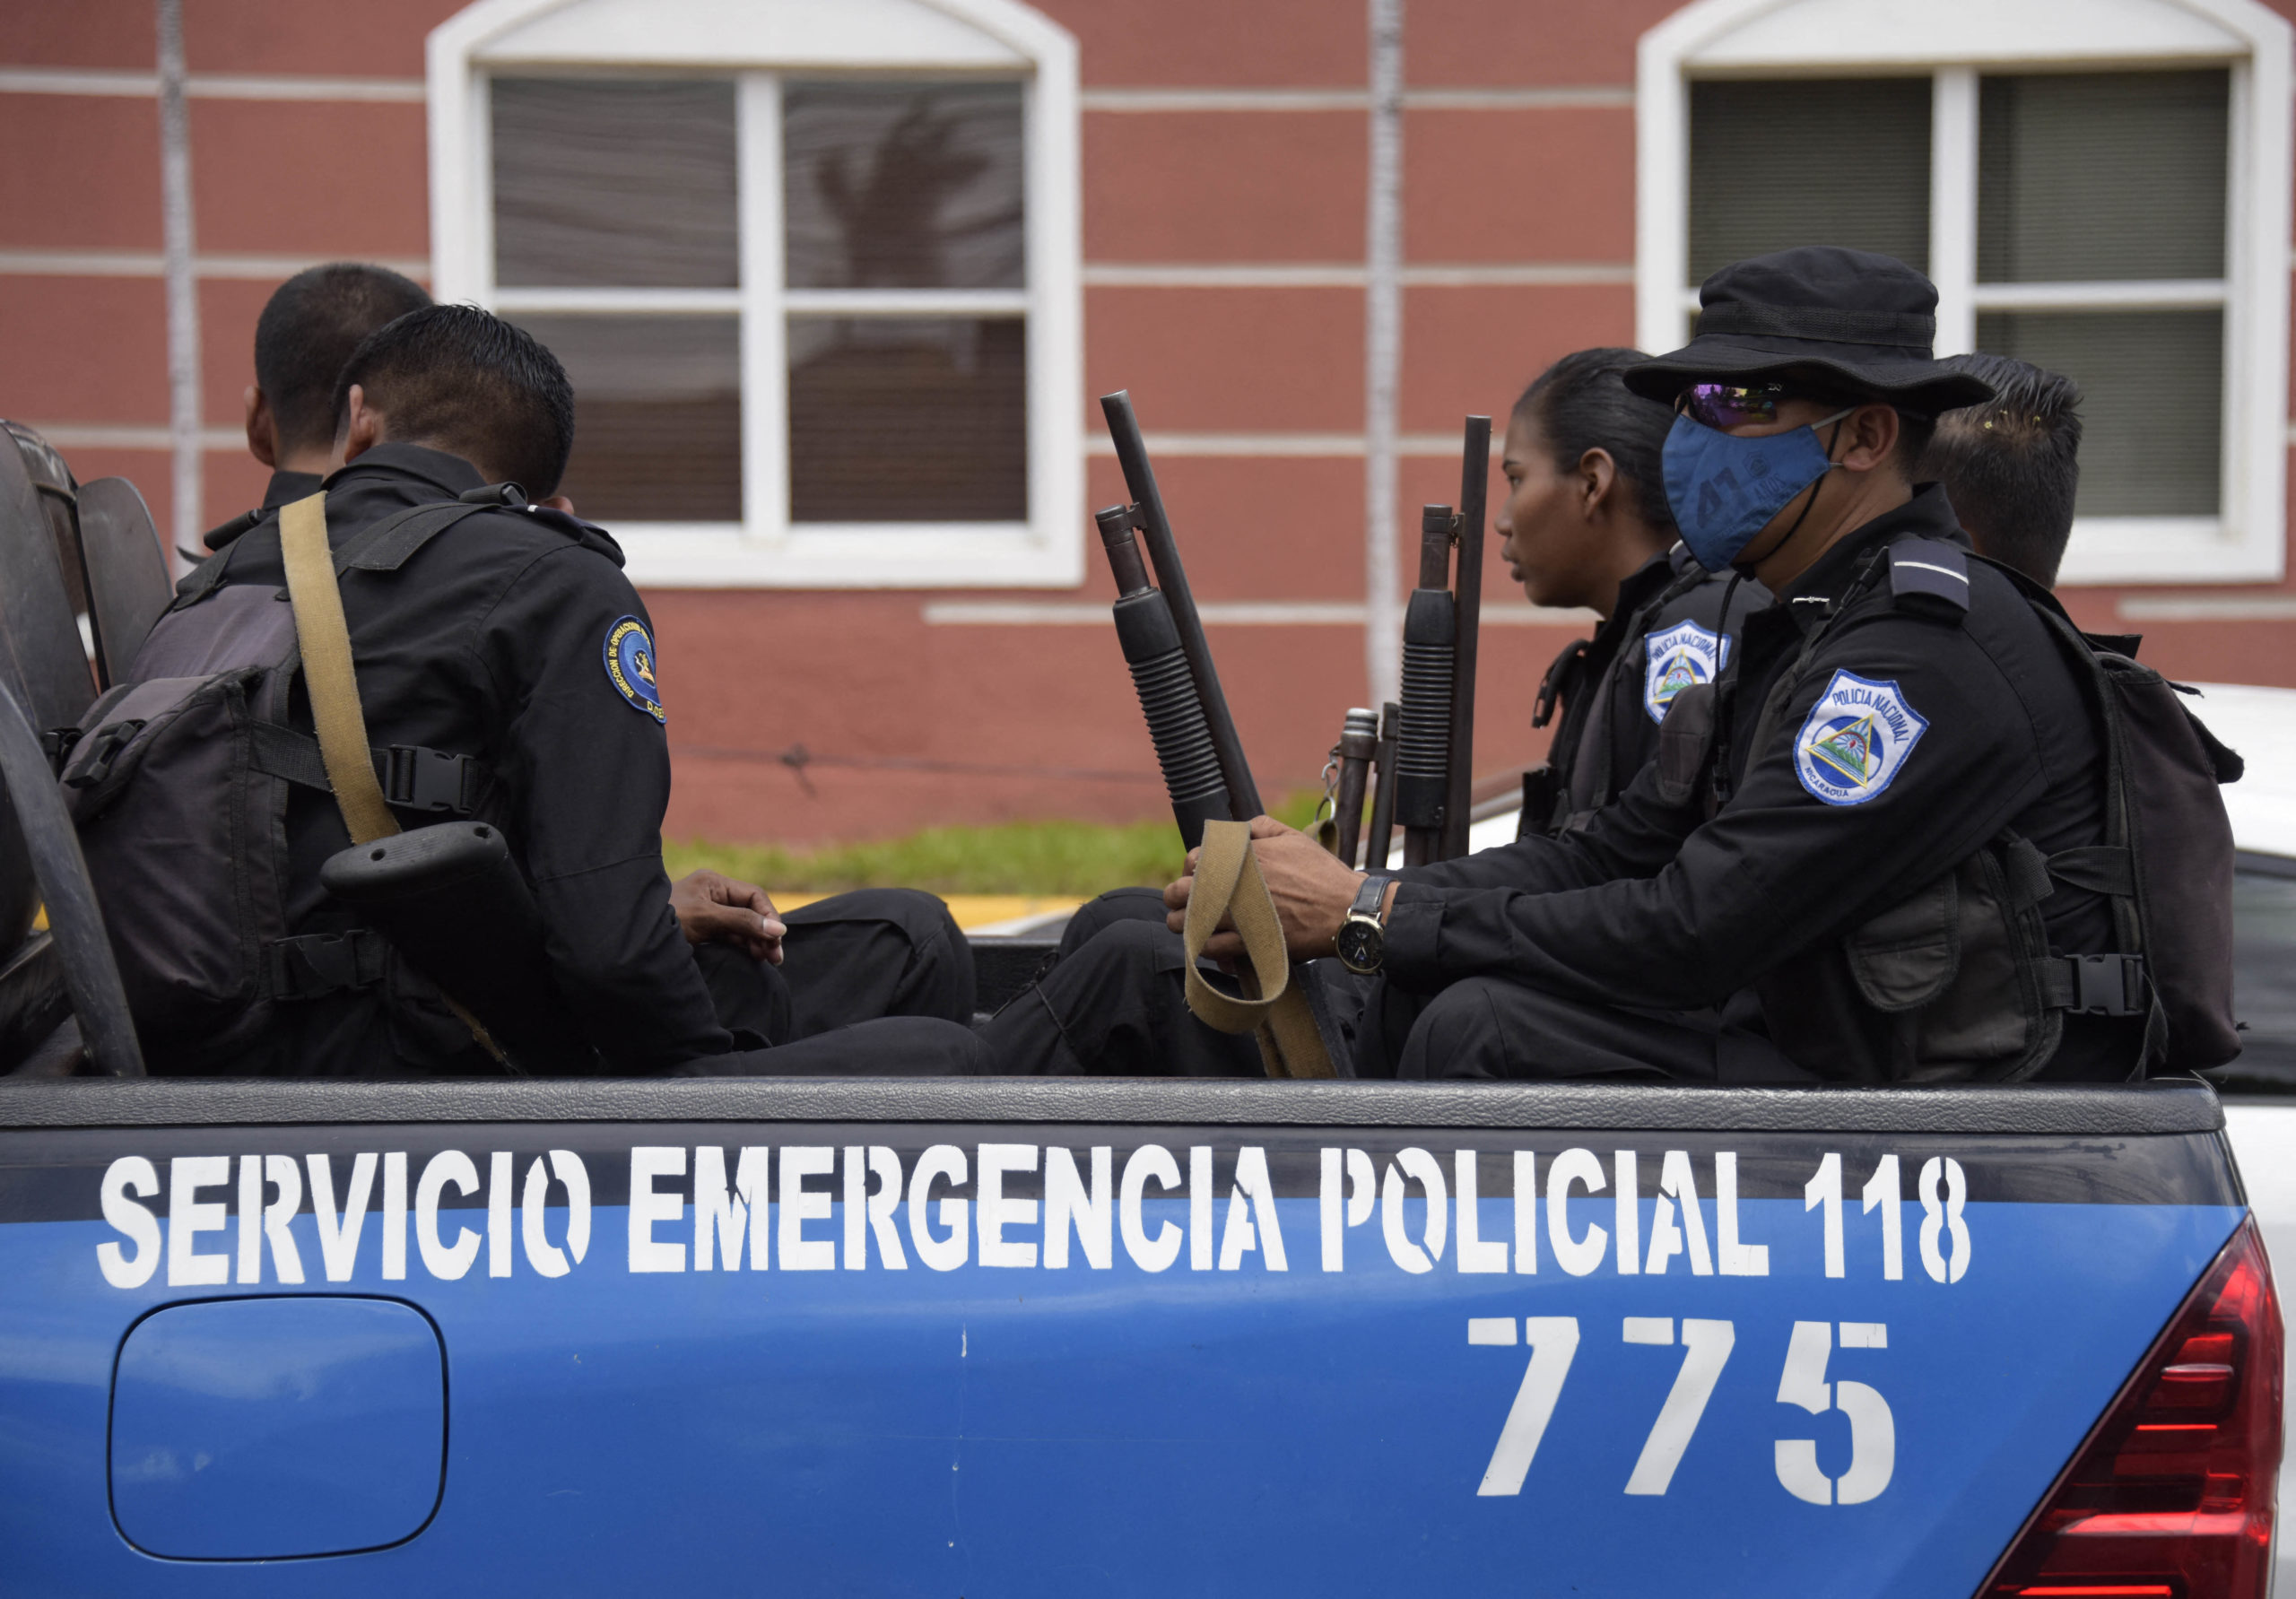 Daniel Ortega aumenta repressão para garantir reeleição